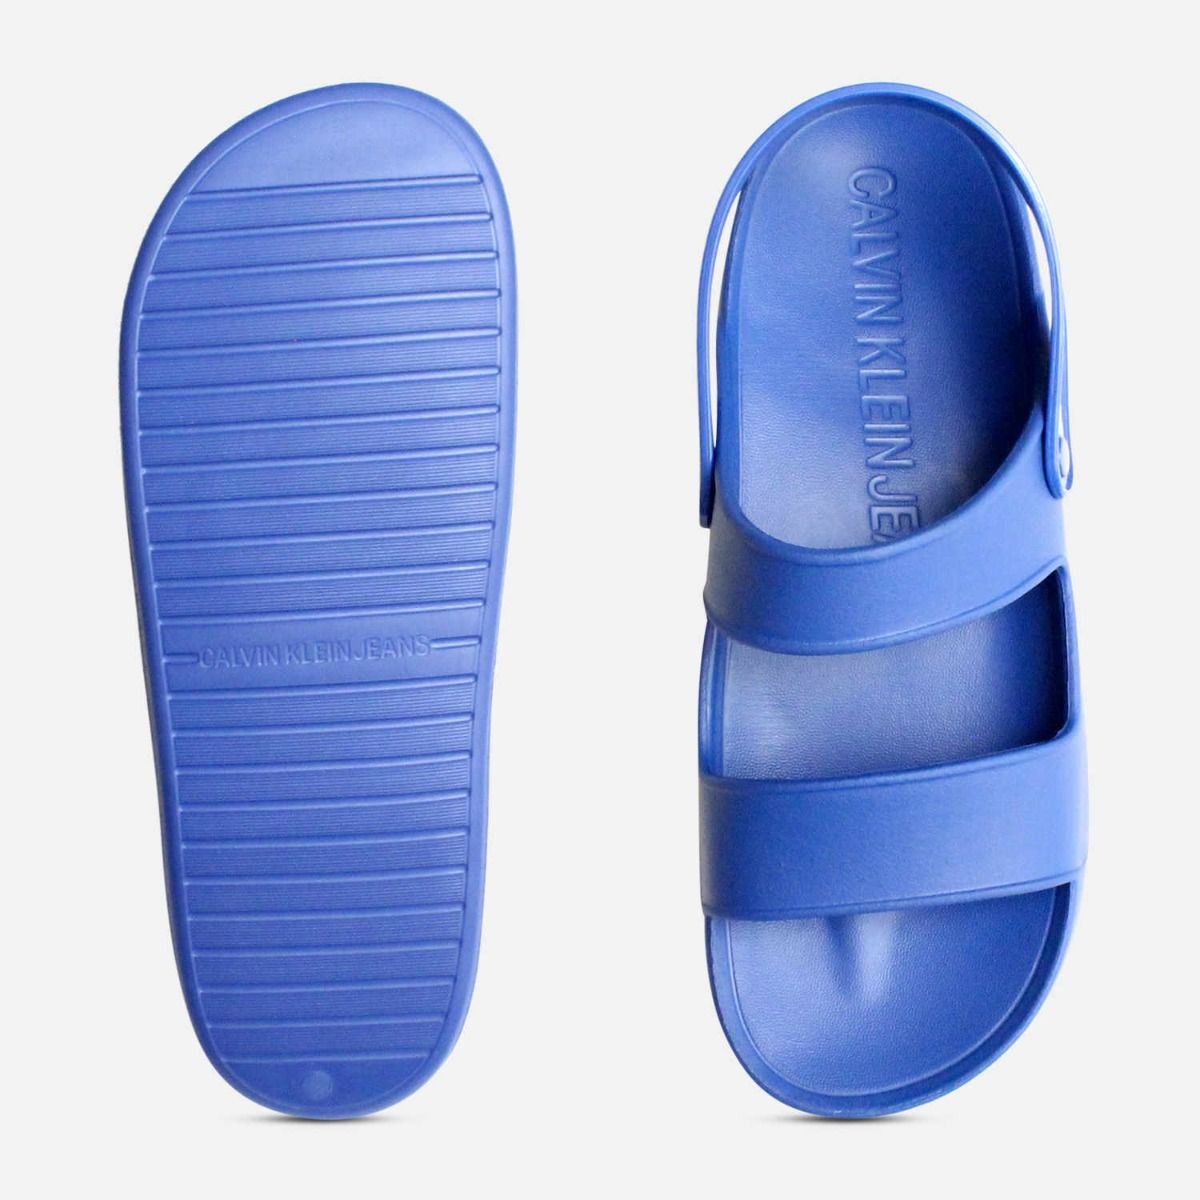 Calvin Klein Designer Rubber Sandals in Nautical Patton Blue